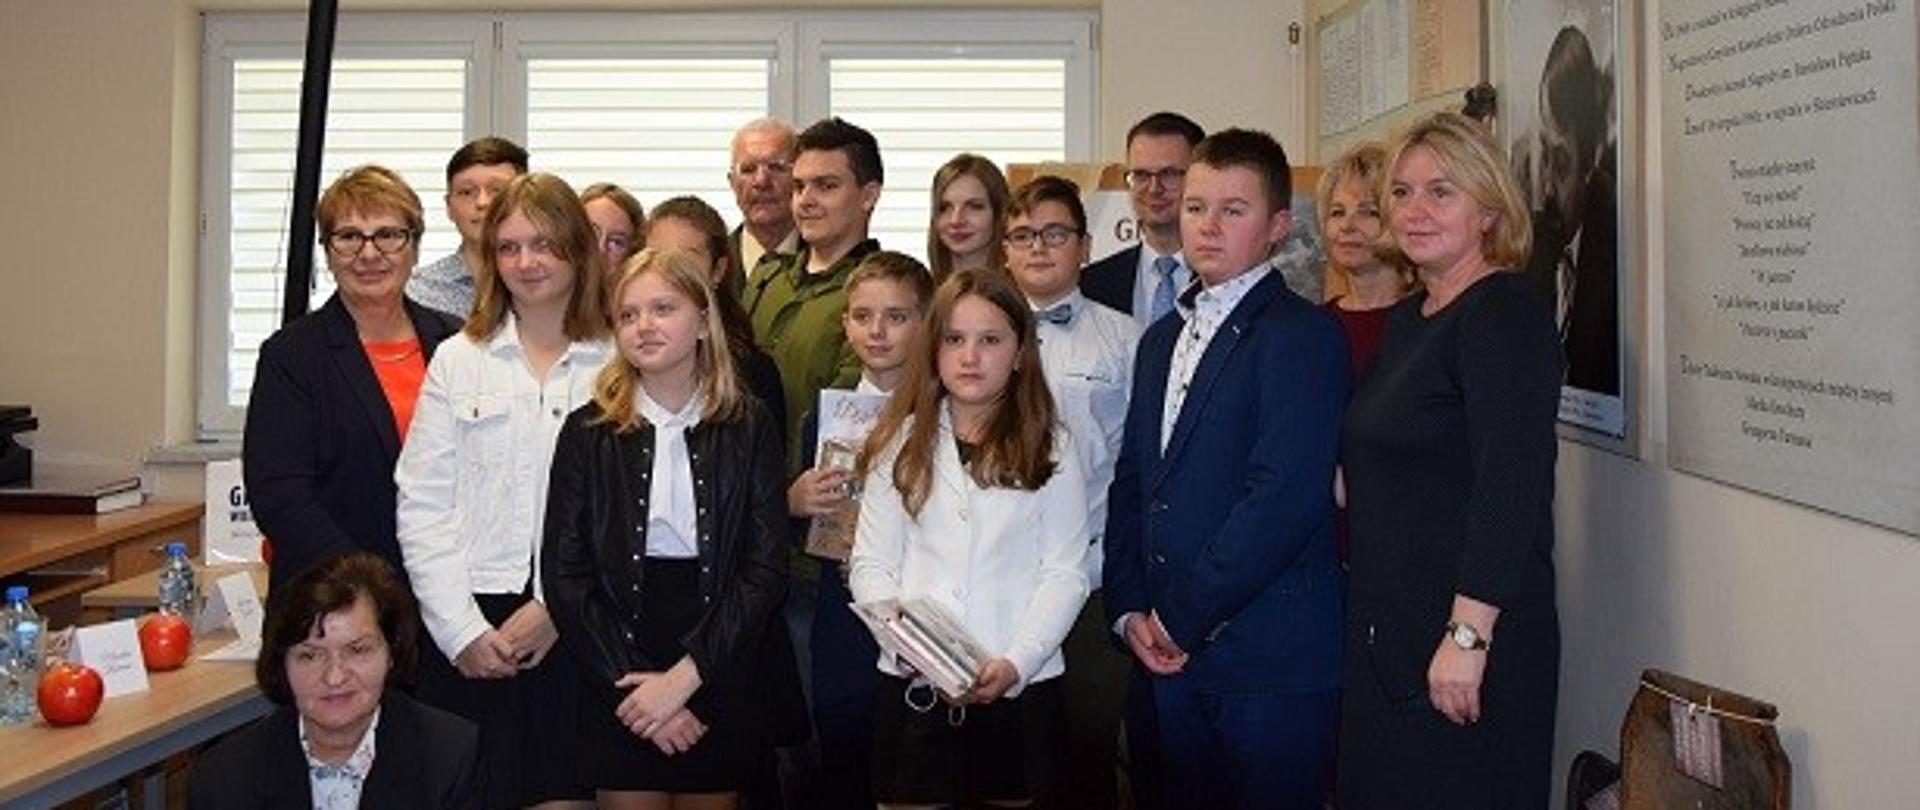 Uczniów klas 6-8 Szkoły Podstawowej w Wietrzychowicach wraz zaproszonymi gośćmi